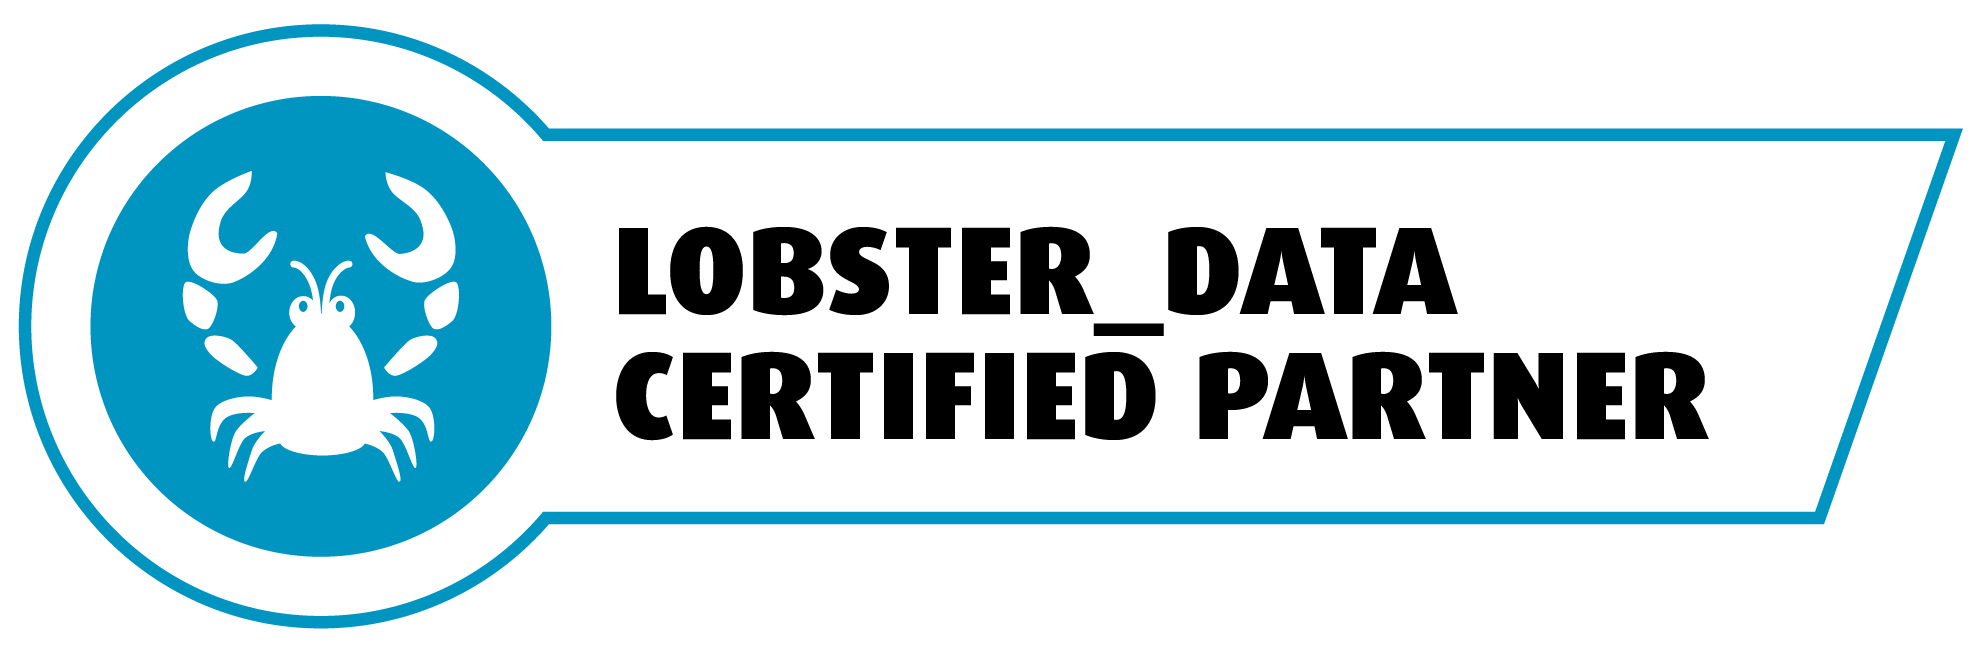 Lobster Data Partner